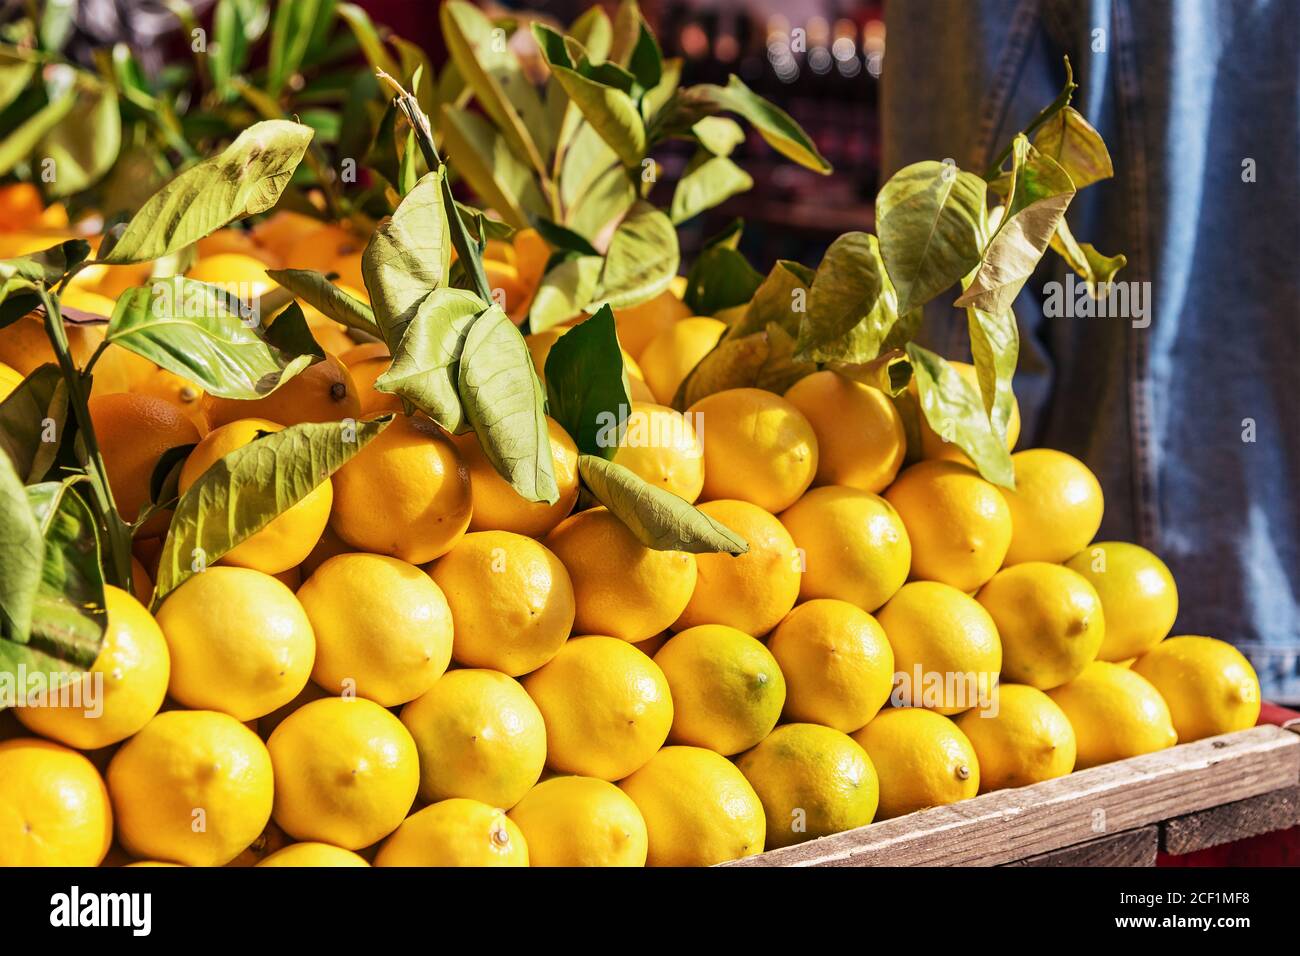 Zitronen auf dem Markt, Herbsternte Verkauf. Zitrusfrüchte, gesunde Ernährung Konzept Stockfoto